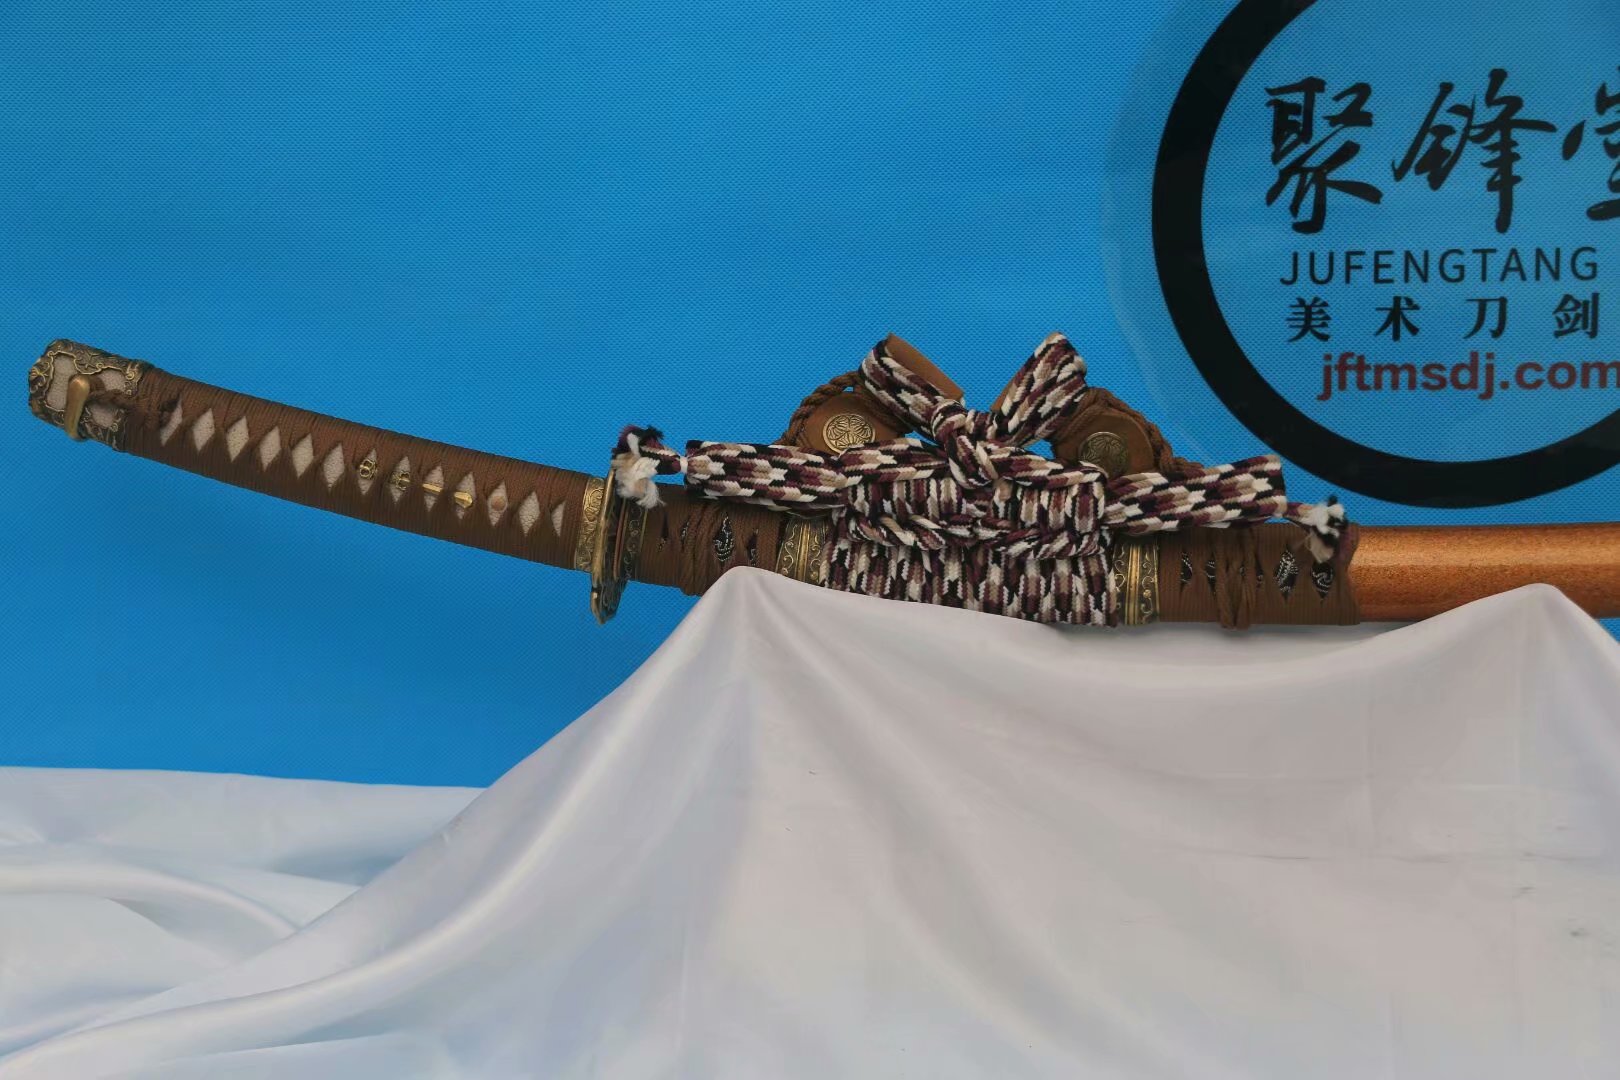 三日月宗近标准版 - 聚锋堂美术刀剑-名刀复刻,日本武士刀,太刀,唐刀